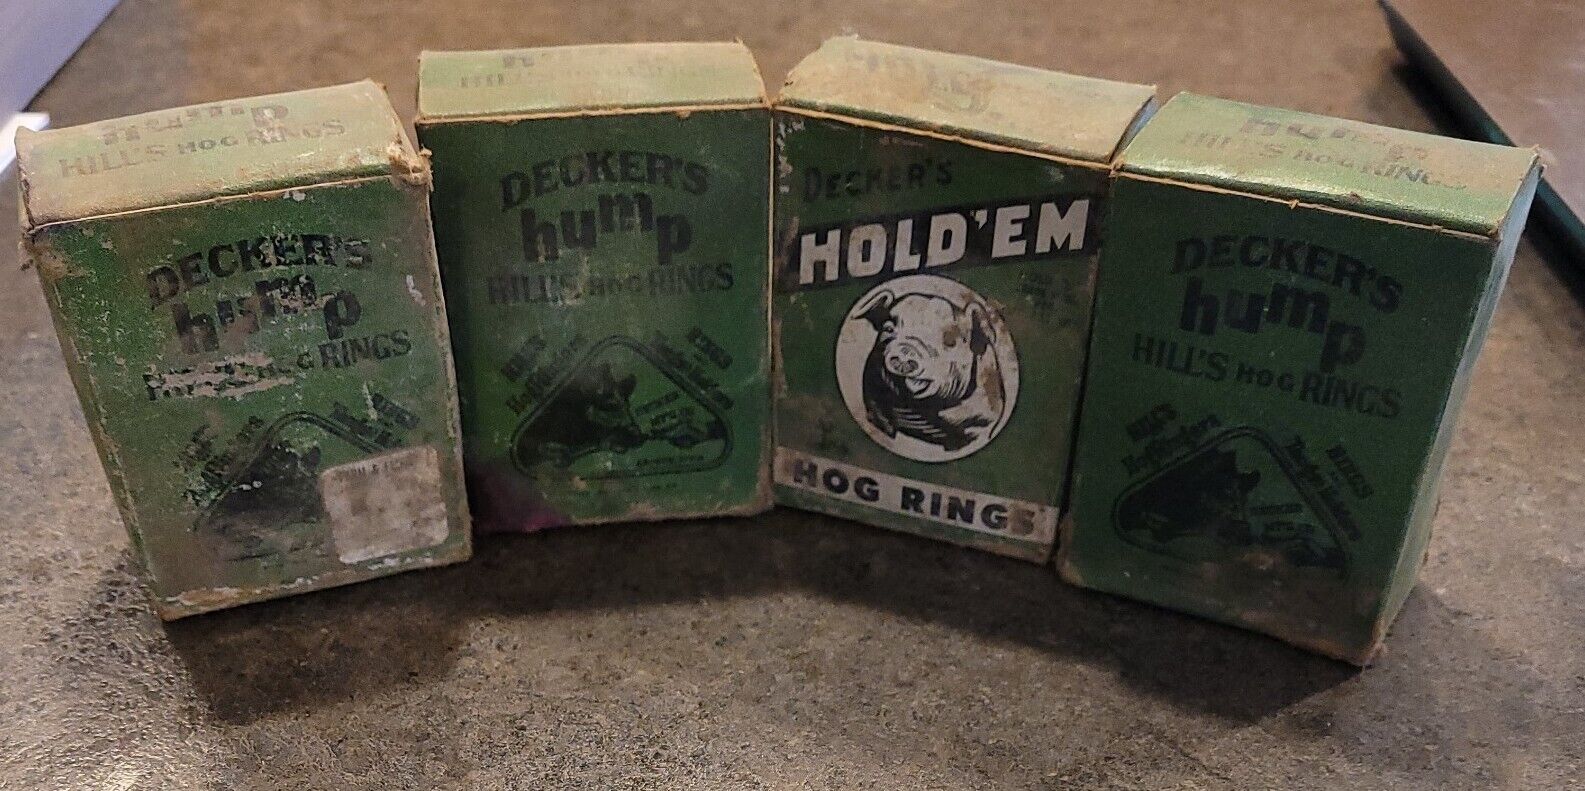 Vintage Decker's Hog Rings